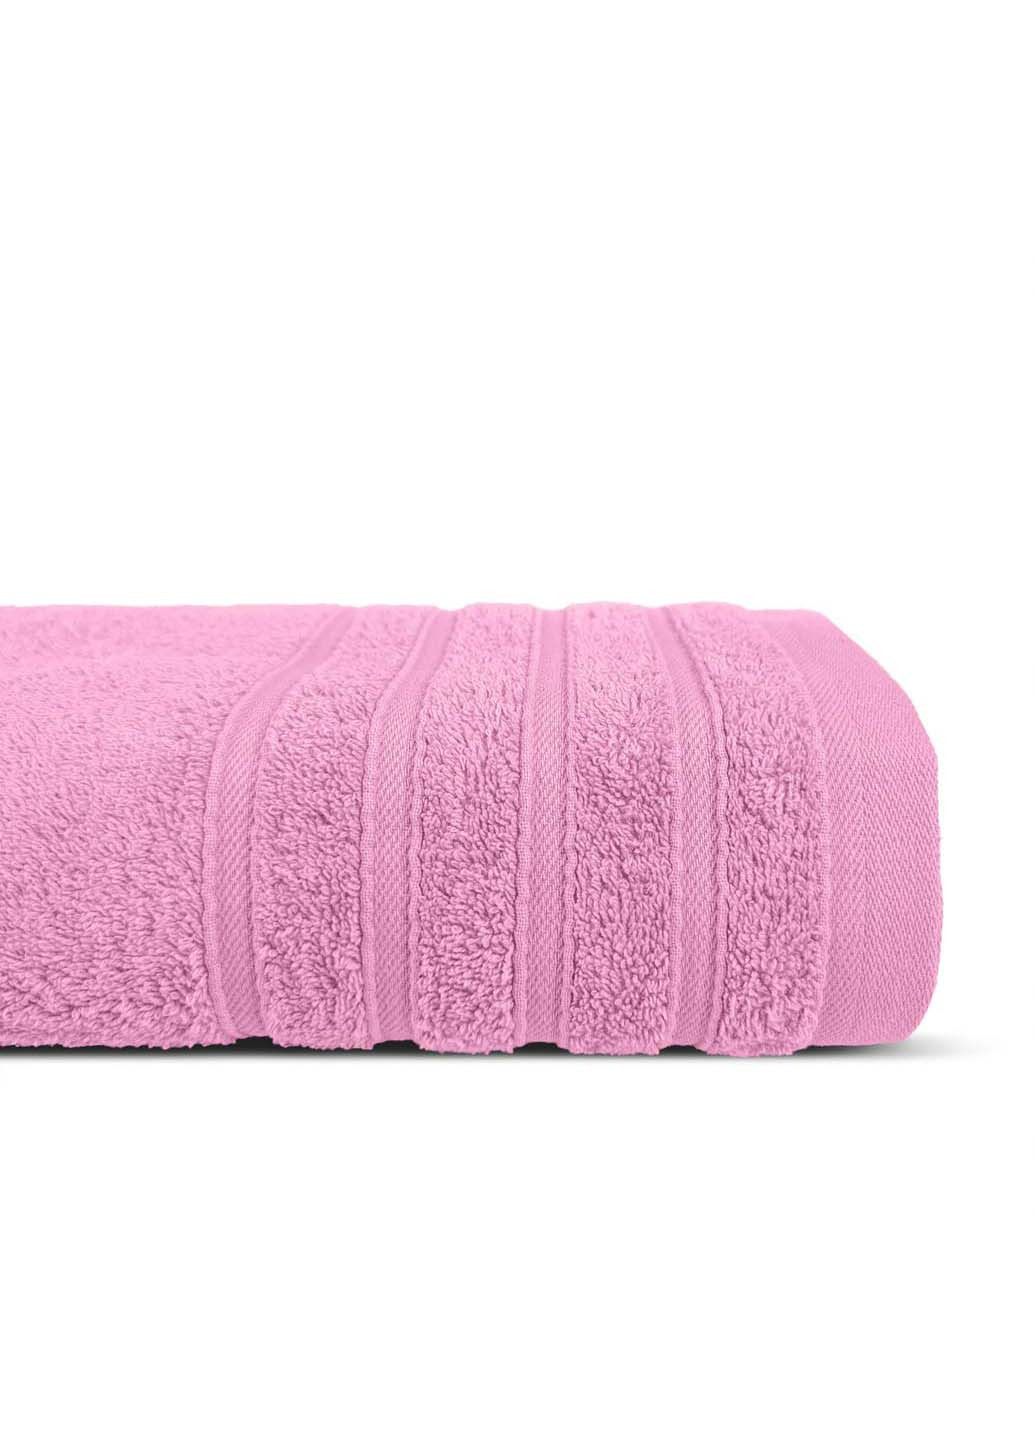 Cosas полотенце махровое 50х90 см розовый производство -